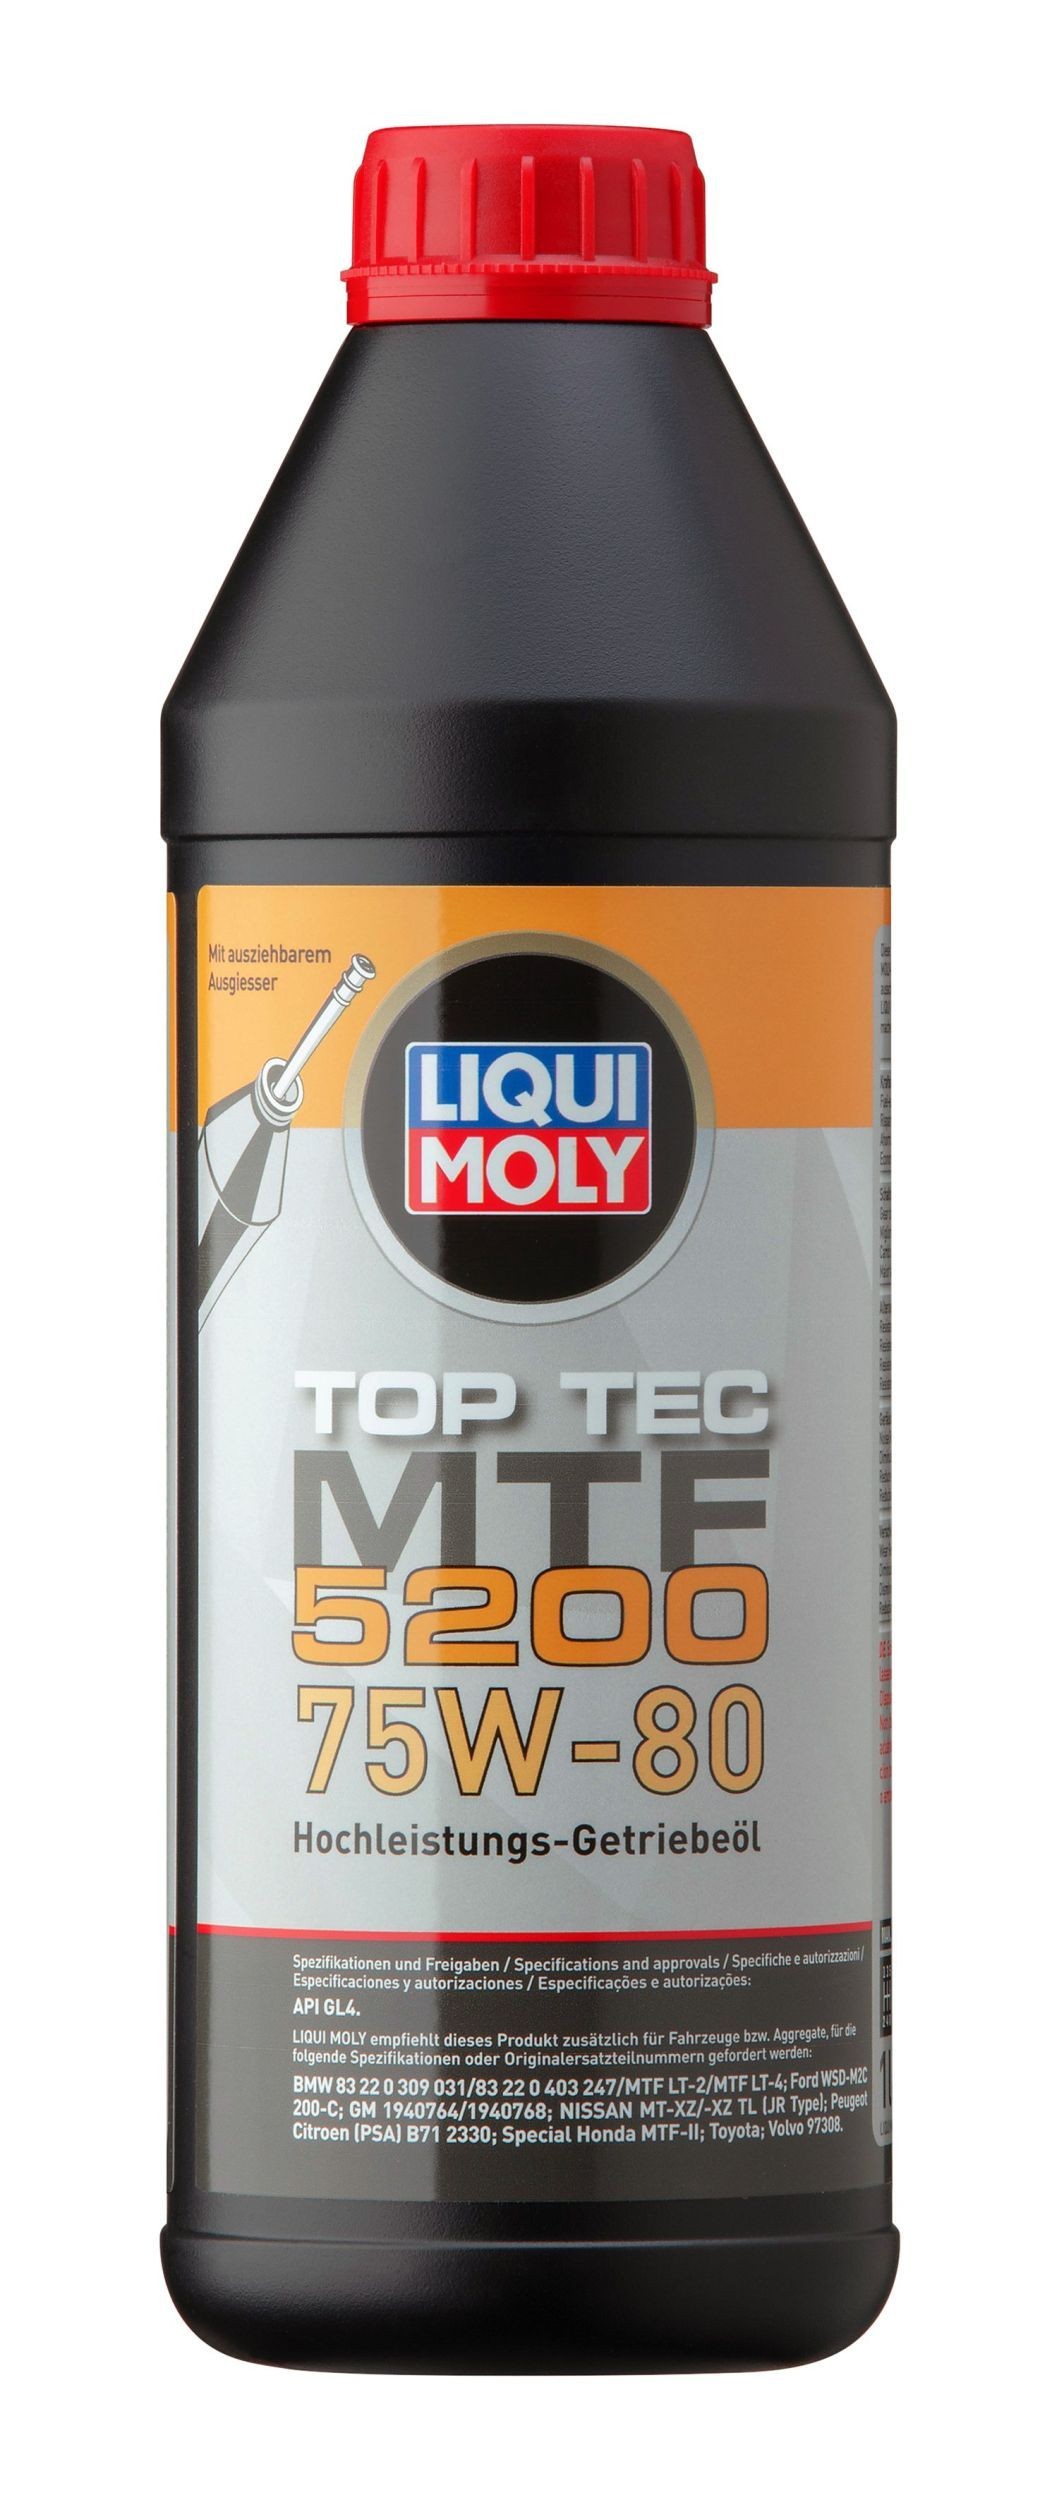 LIQUI MOLY Top Tec, MTF 5200 20845 Transmission fluid 75W-80, Capacity: 1l